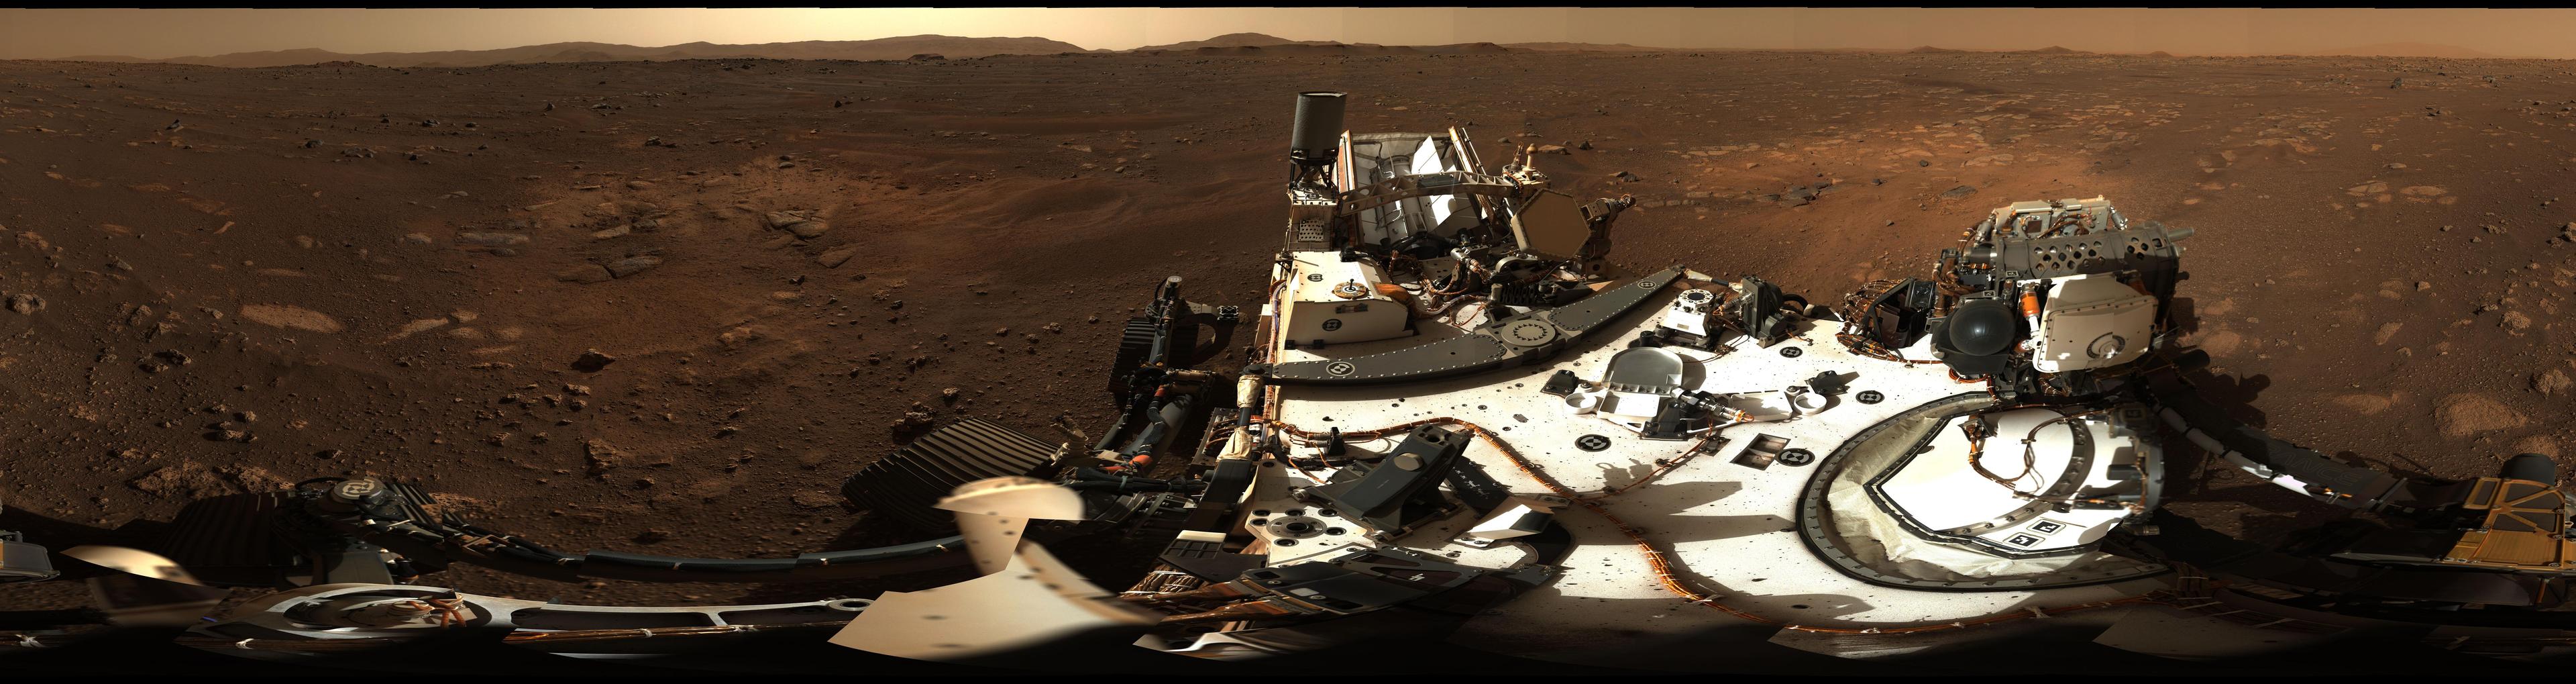 صورة پانورامية تغطّي 360 درجة من قعر فوّهة جيزيرو على سطح المريخ، يظهر في مقدّمتها سطح عربة المُثابرة (پِرسيڤيرَنس) ومن حولها بقعٌ ترابية بلون أفتح من غيرها، وترتفع حافة الفوّهة في البعيد.